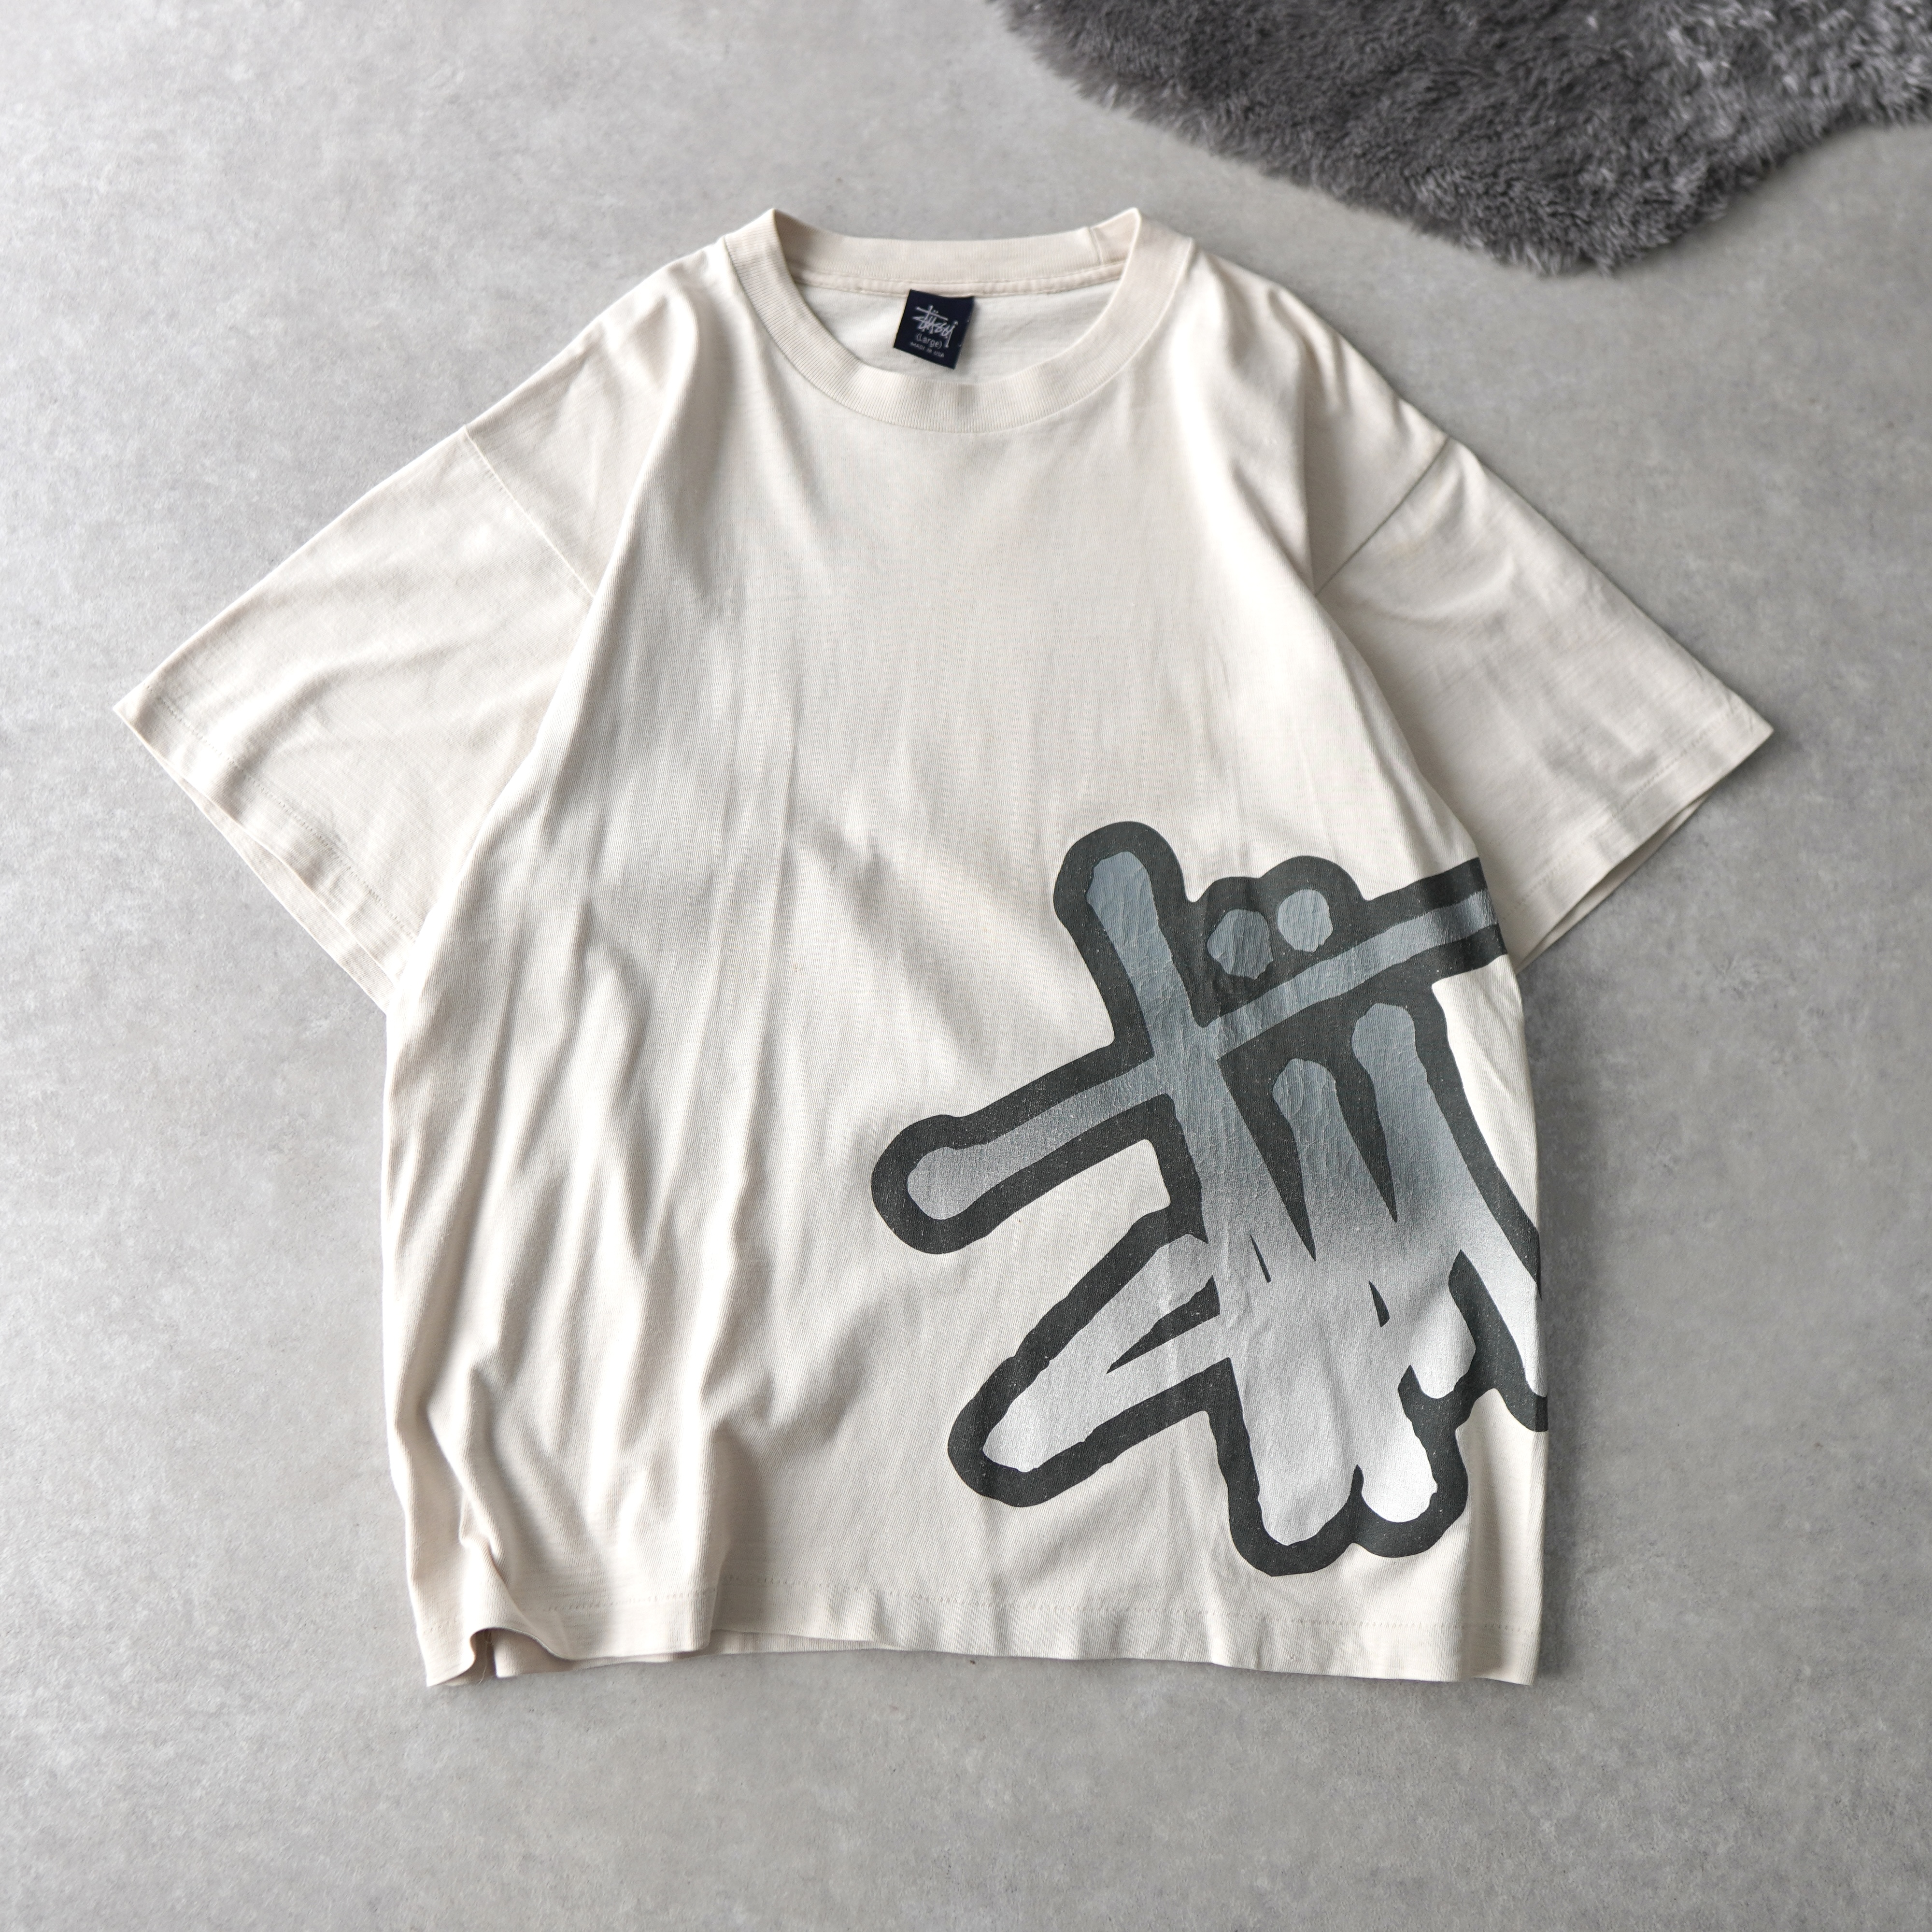 STUSSY / ステューシー Tシャツ スプレーアートロゴ / アメリカ製 M